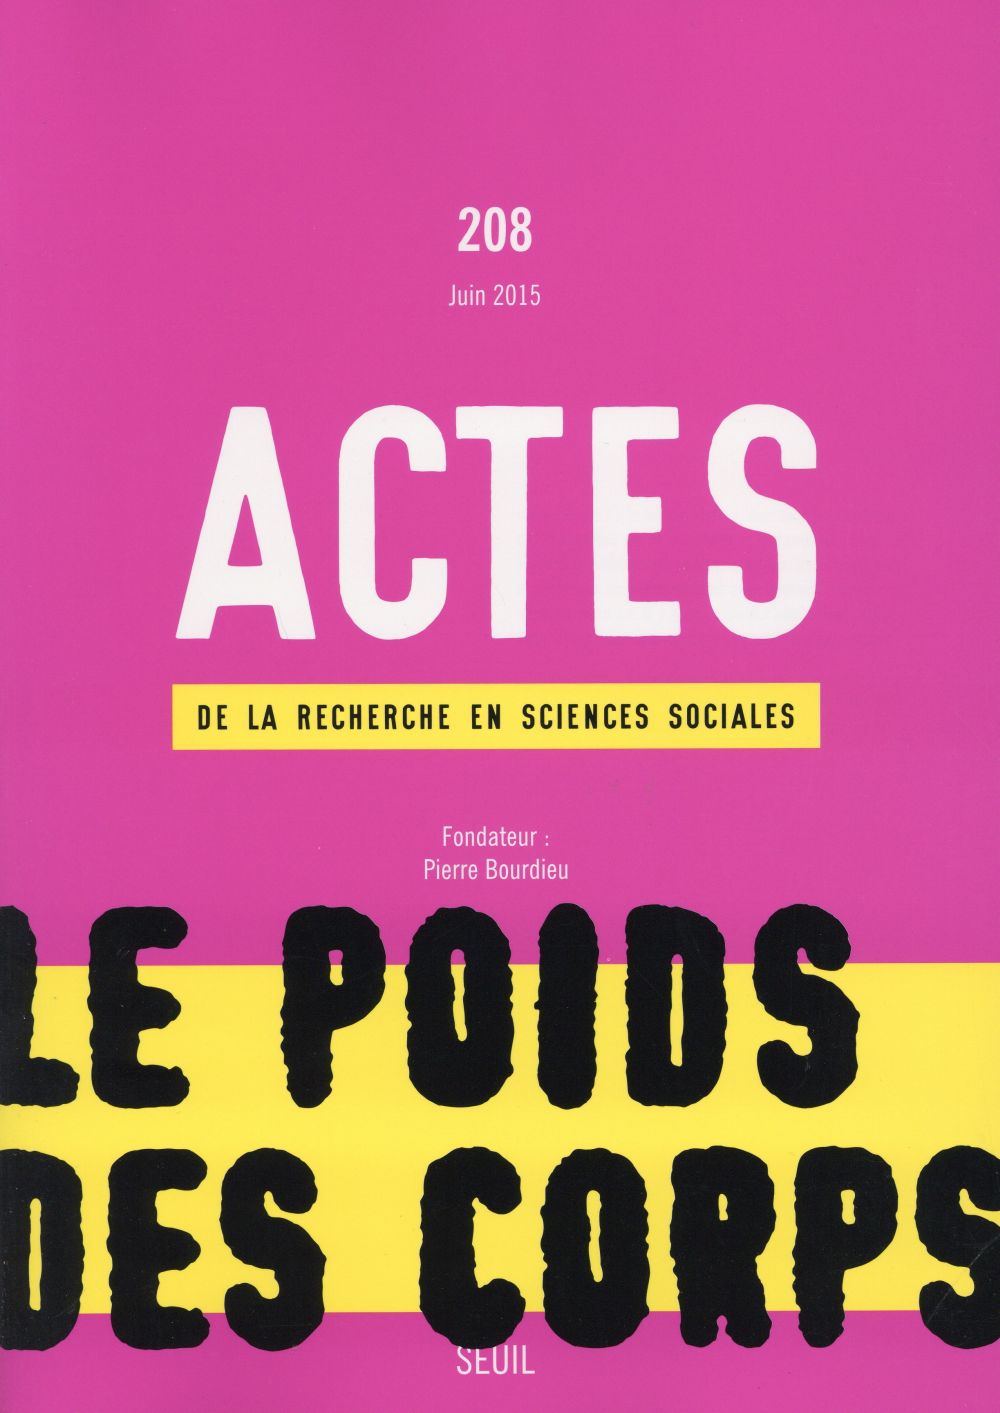 "ACTES DE LA RECHERCHE EN SCIENCES SOCIALES, N  208, TOME 7. ""LE POIDS DES CORPS""" - """LE POIDS D